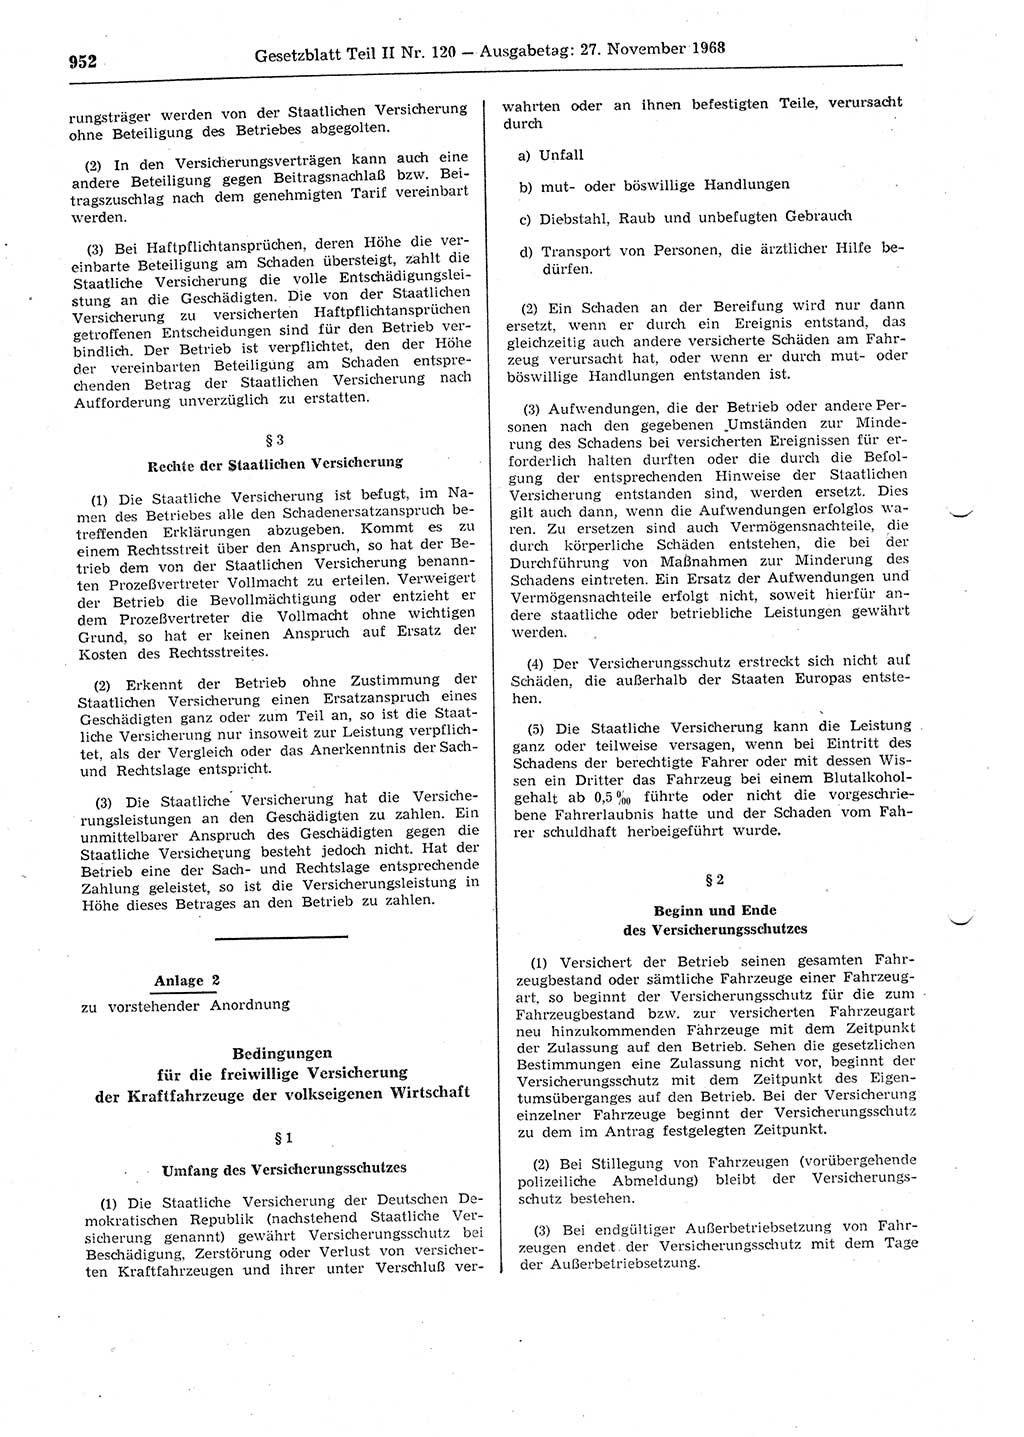 Gesetzblatt (GBl.) der Deutschen Demokratischen Republik (DDR) Teil ⅠⅠ 1968, Seite 952 (GBl. DDR ⅠⅠ 1968, S. 952)